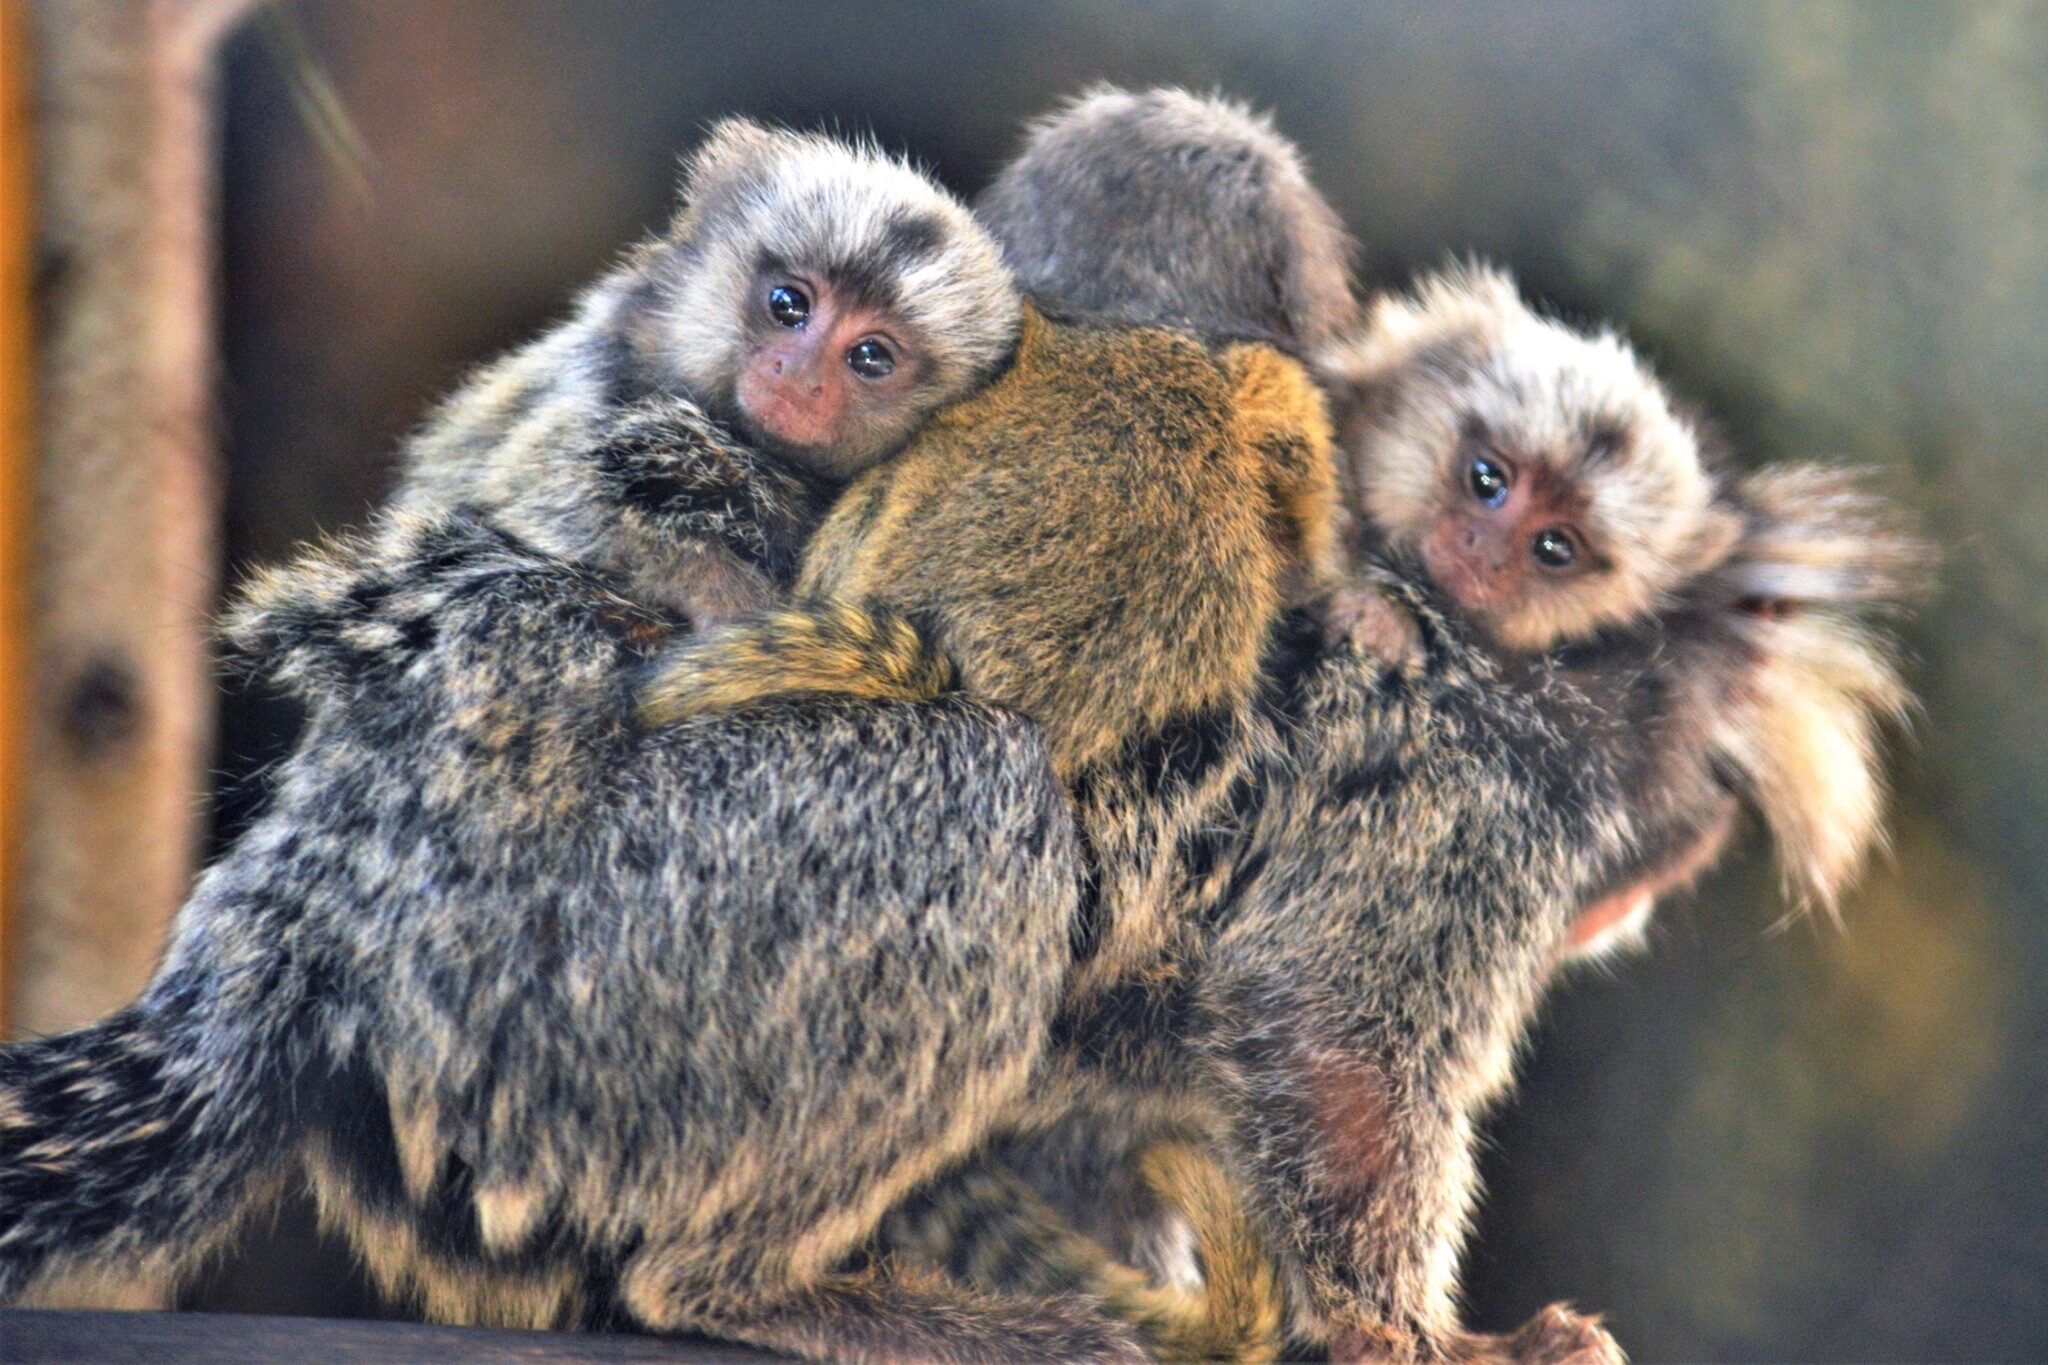 ฮือฮา! ลิงจิ๋ว “คอมมอนมาโมเซท” ออกลูกแฝด 3 สมาชิกใหม่ สวนสัตว์เปิดเขาเขียว